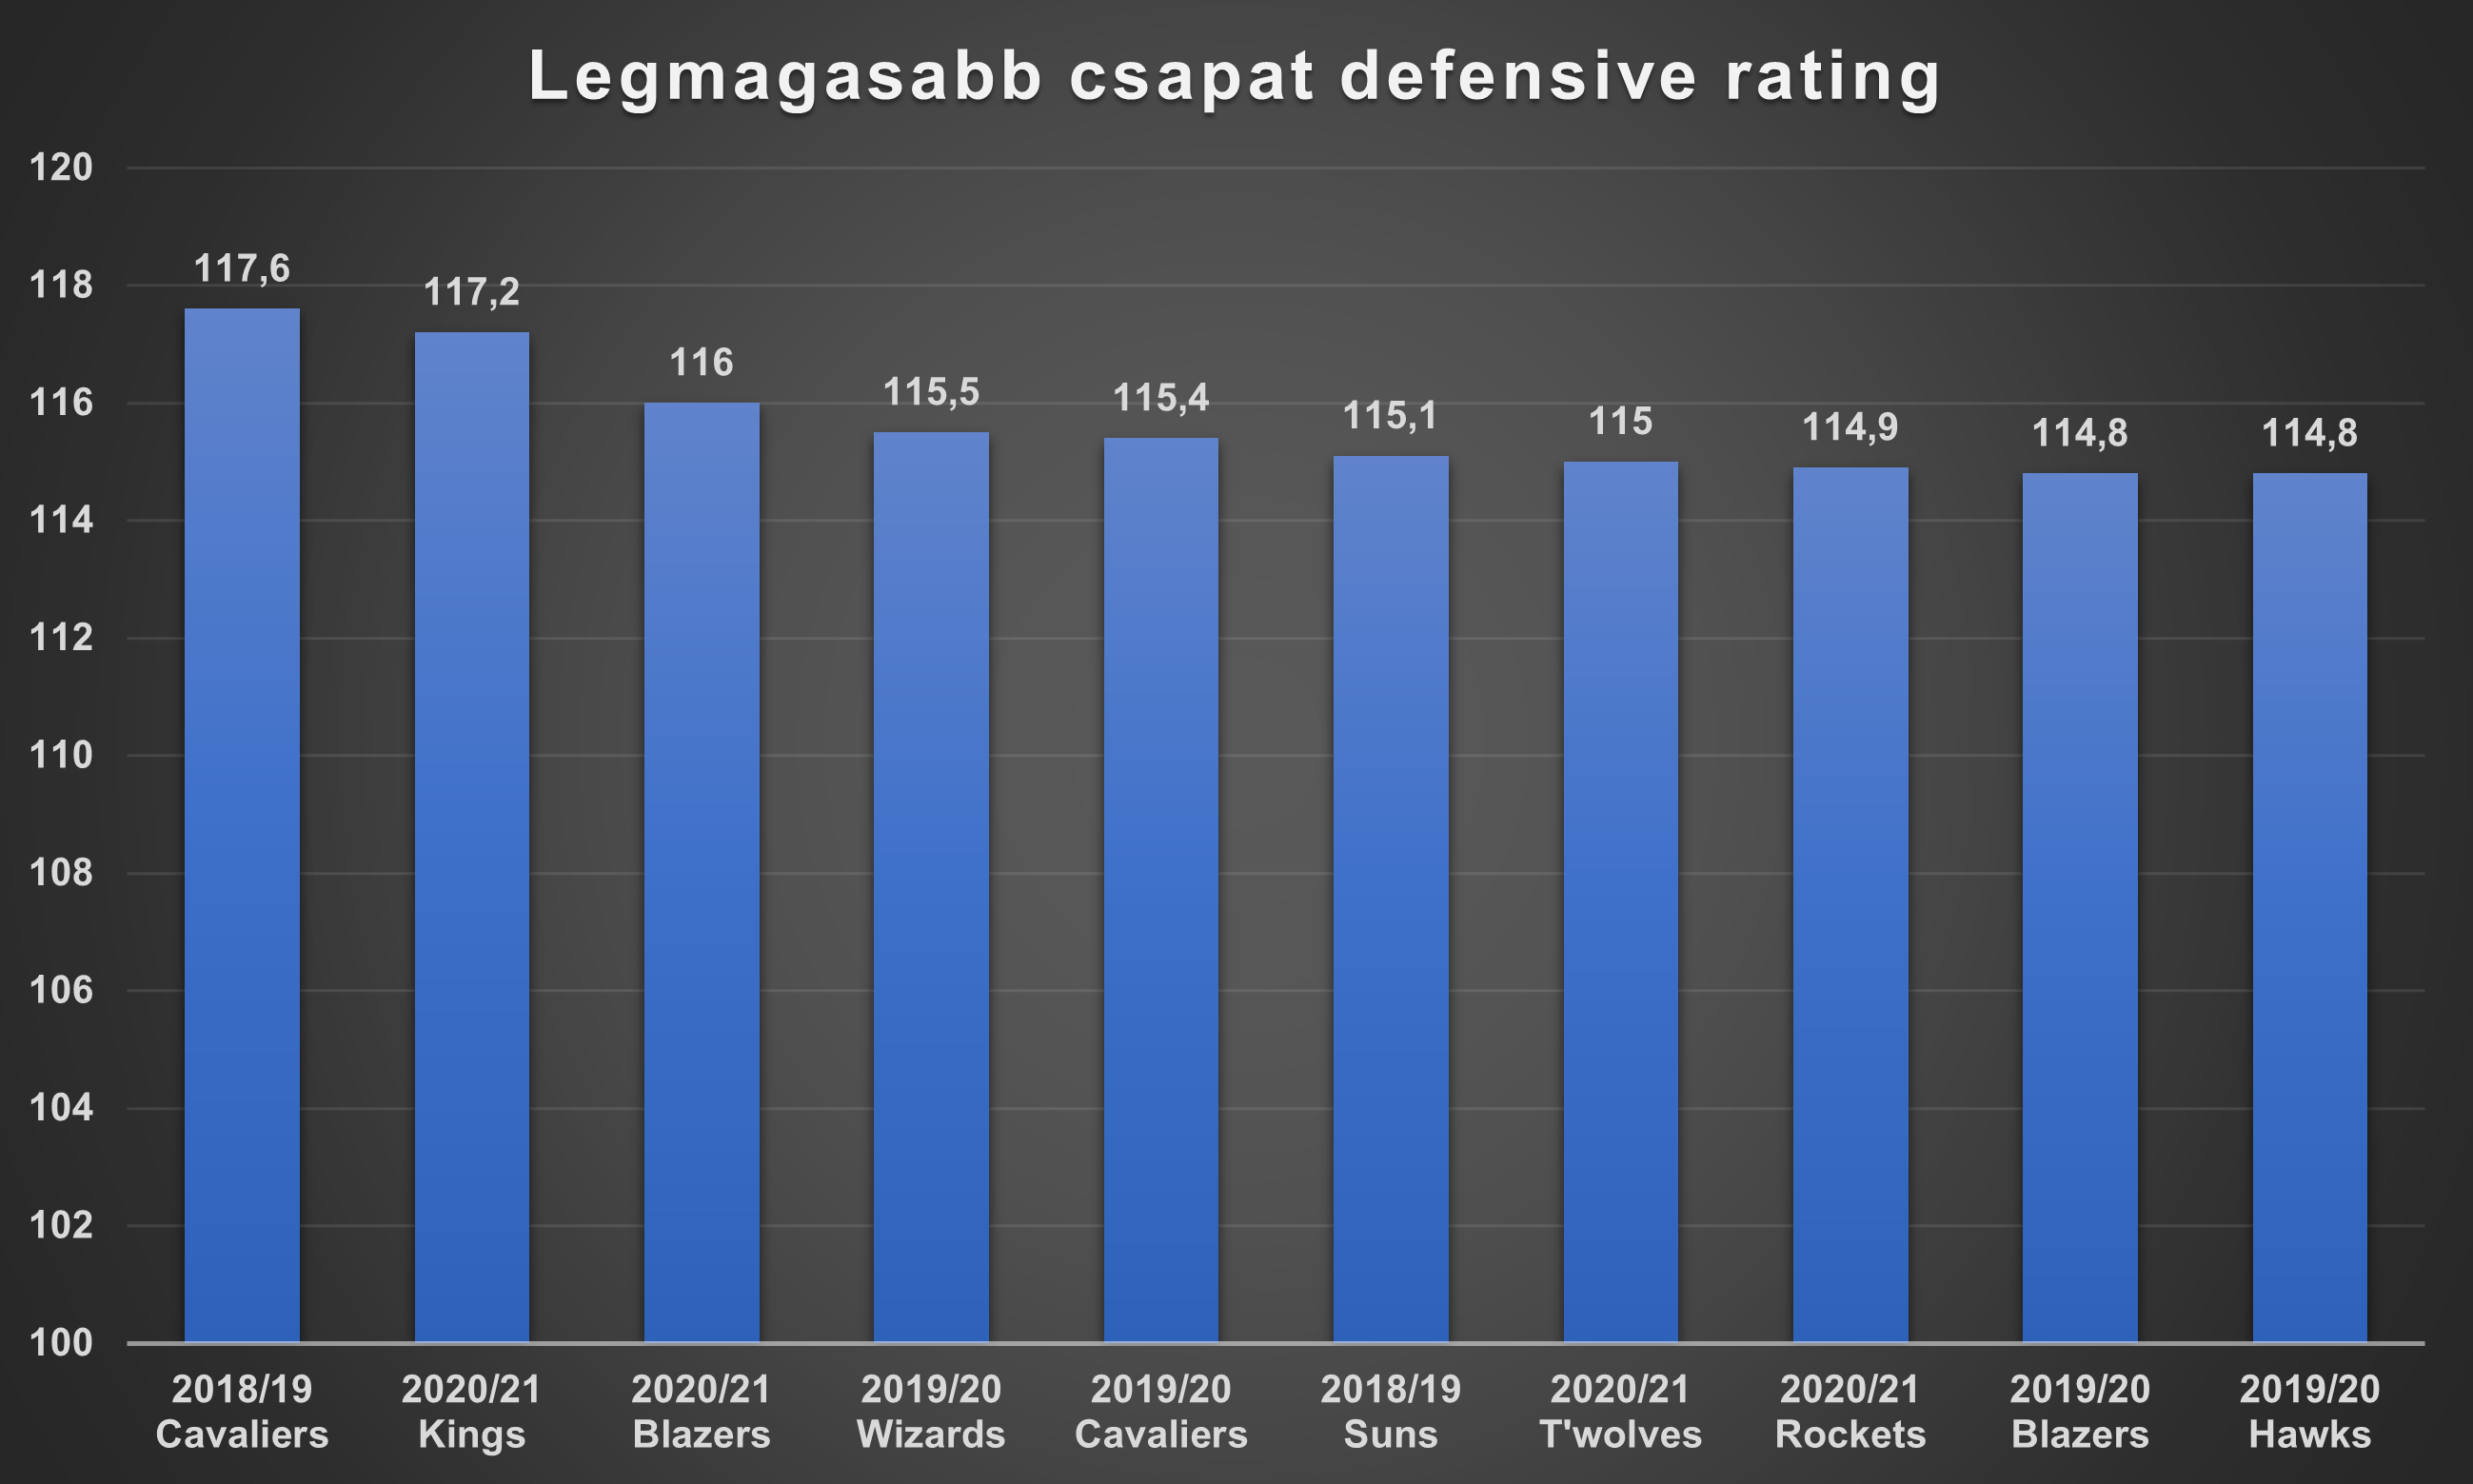 legmagasabb_csapat_defensive_rating.png